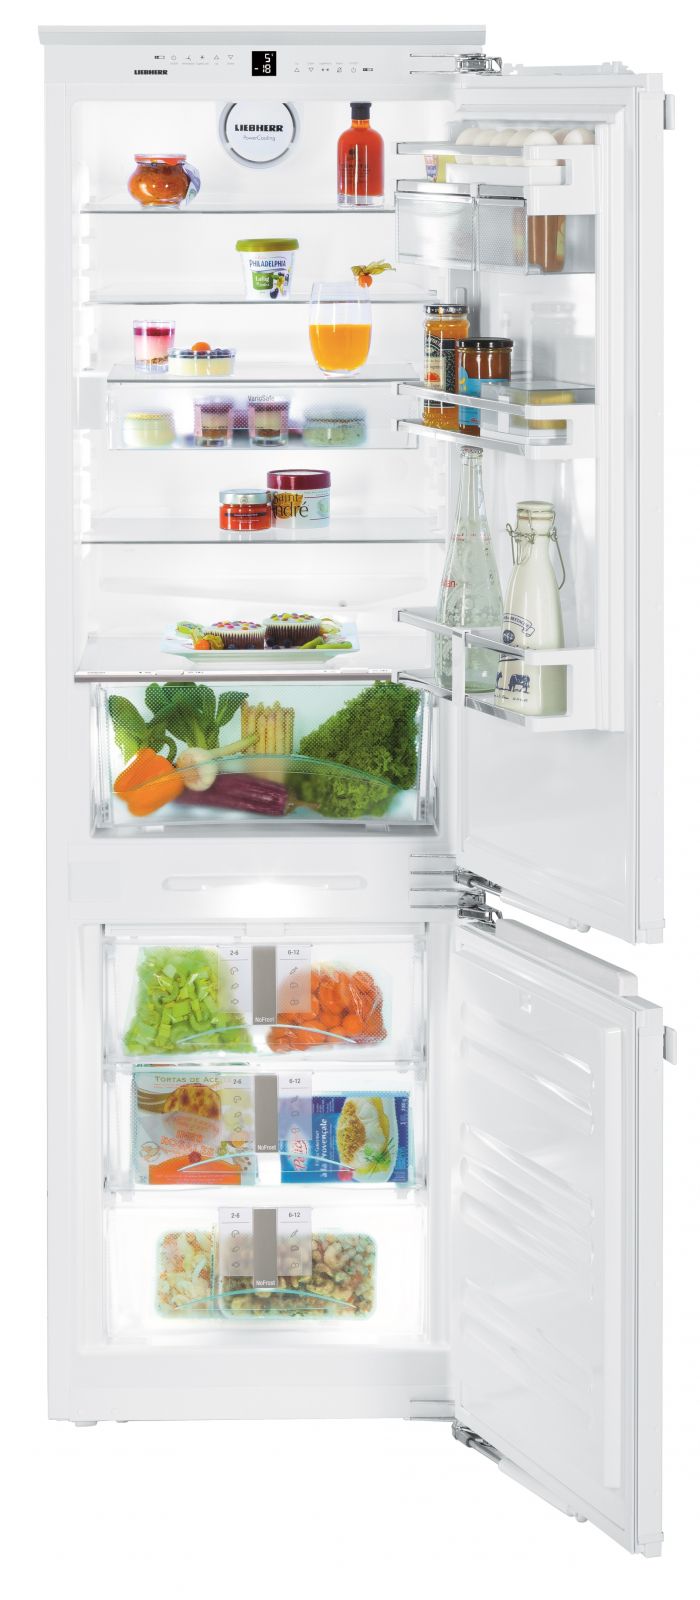 Холодильник встраиваемый двухкамерный no frost. Liebherr ICN 3376 Premium NOFROST. Либхер холодильник встраиваемый двухкамерный. Холодильник Liebherr ICN 5123. Холодильник Liebherr ICN 3056.